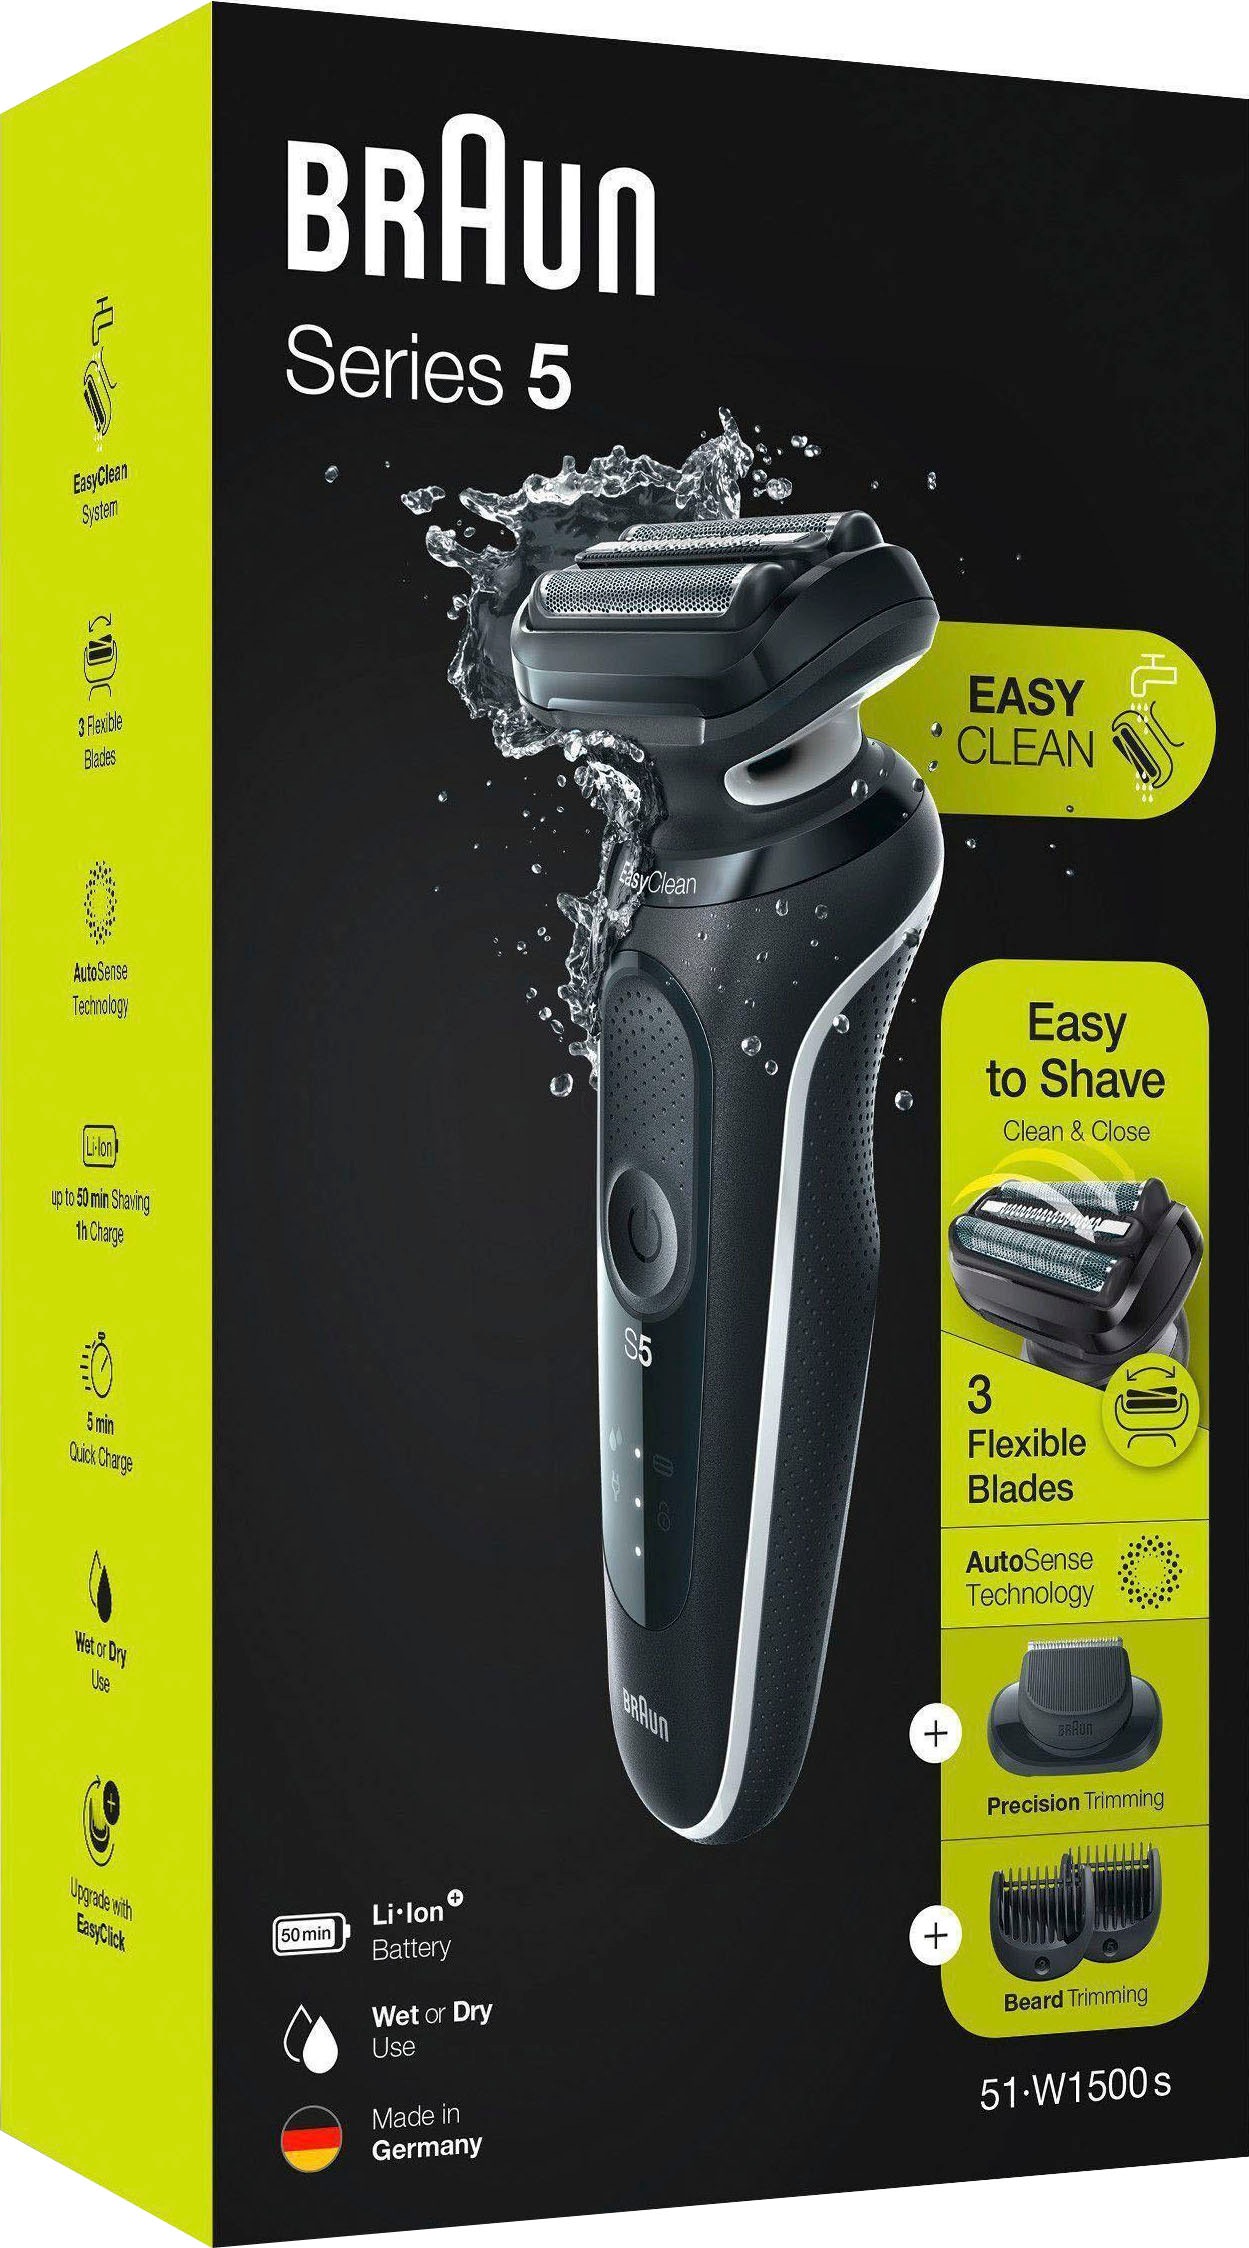 Braun Elektrorasierer »Series 5 51-W1500s«, 1 St. Aufsätze, EasyClick- Barttrimmer-Aufsatz, Wet&Dry online kaufen | Haarschneider